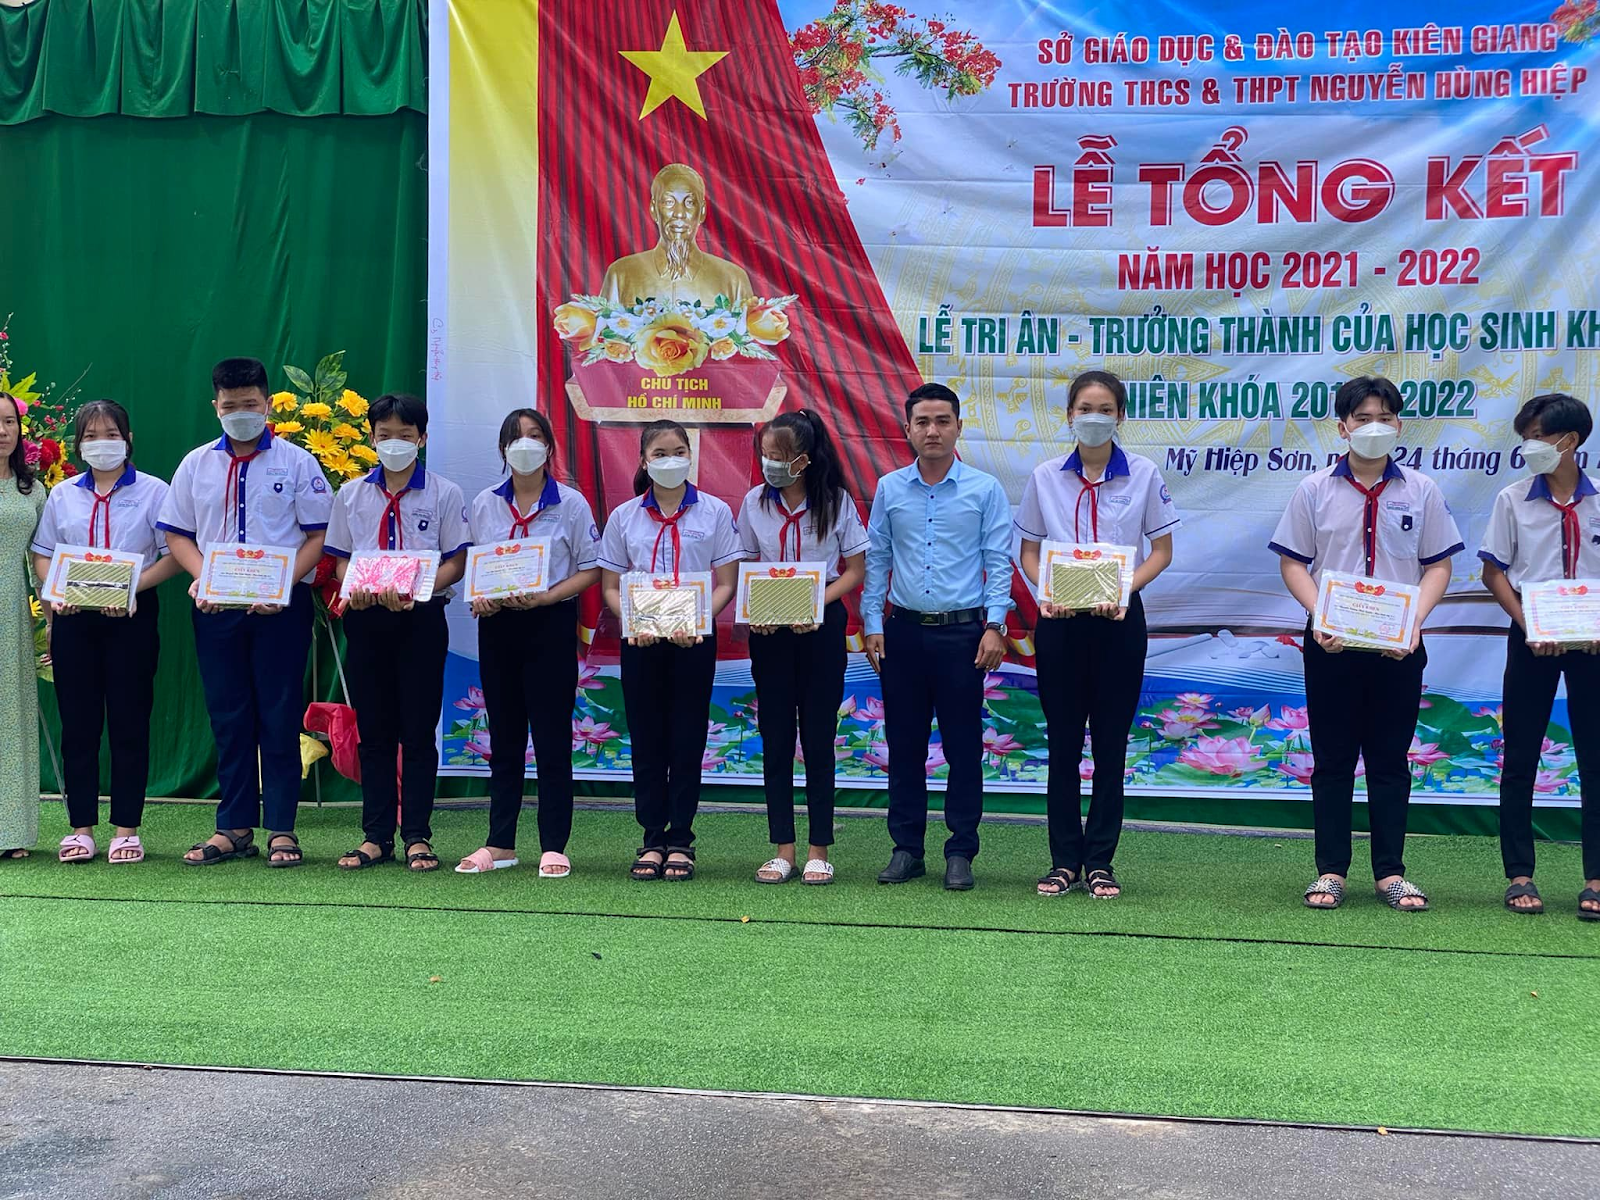  Đánh Giá Trường THPT Nguyễn Hùng Hiệp - Kiên Giang Có Tốt Không